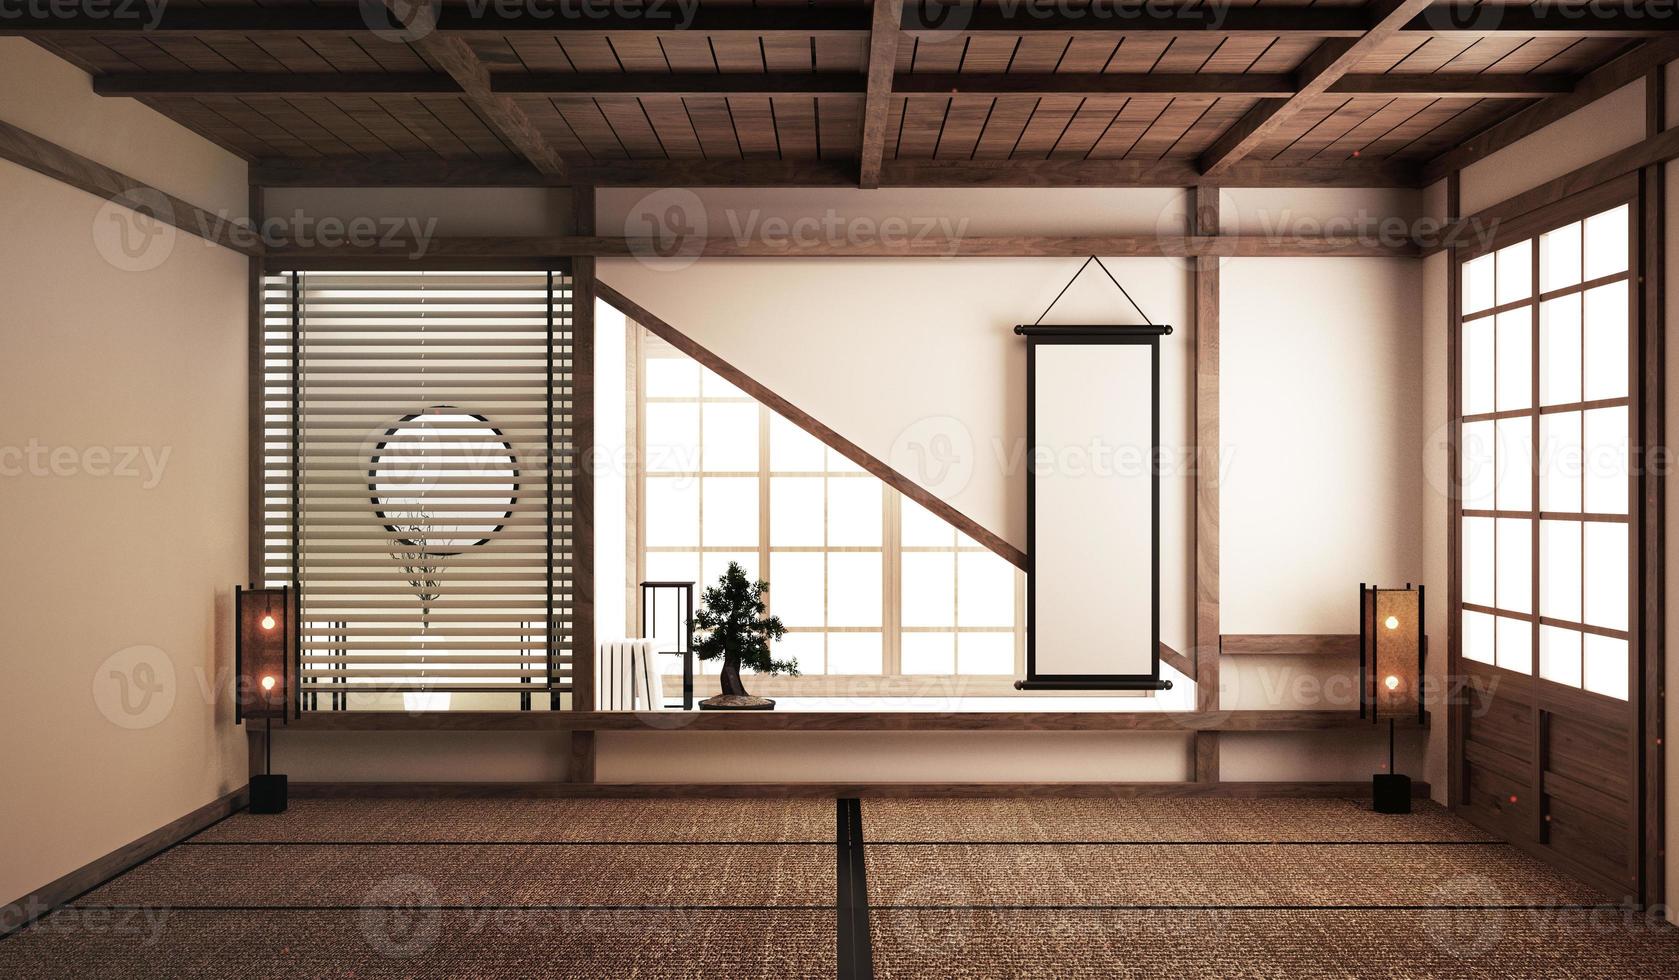 Diseño de interiores, living moderno con mesa baja, sillones, bonsai y decoración estilo japonés. Representación 3d foto